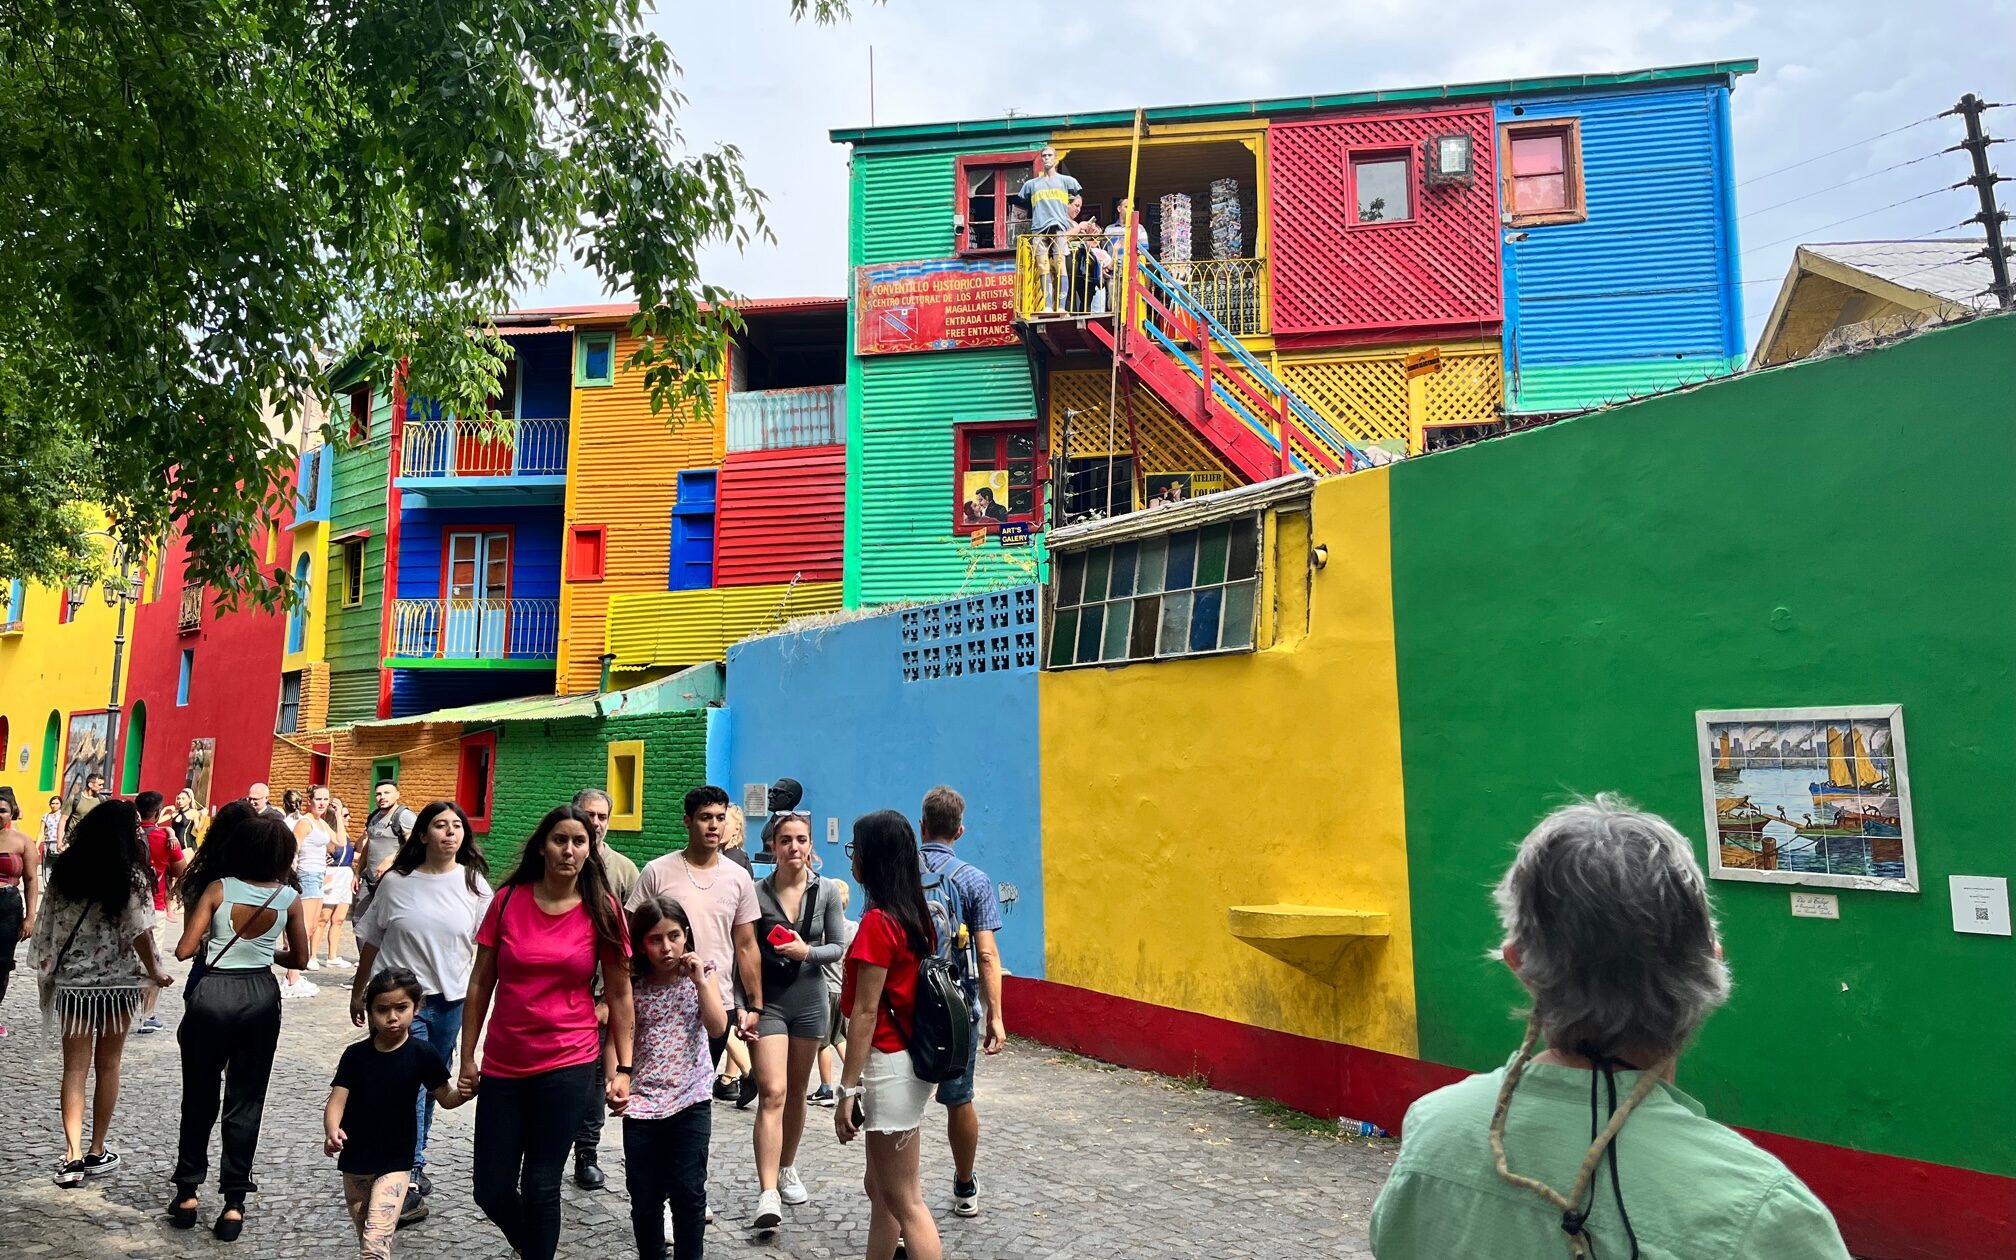 La Boca, meget farverigt kvarter med fodboldstadium, tango i gaderne og mange turister.